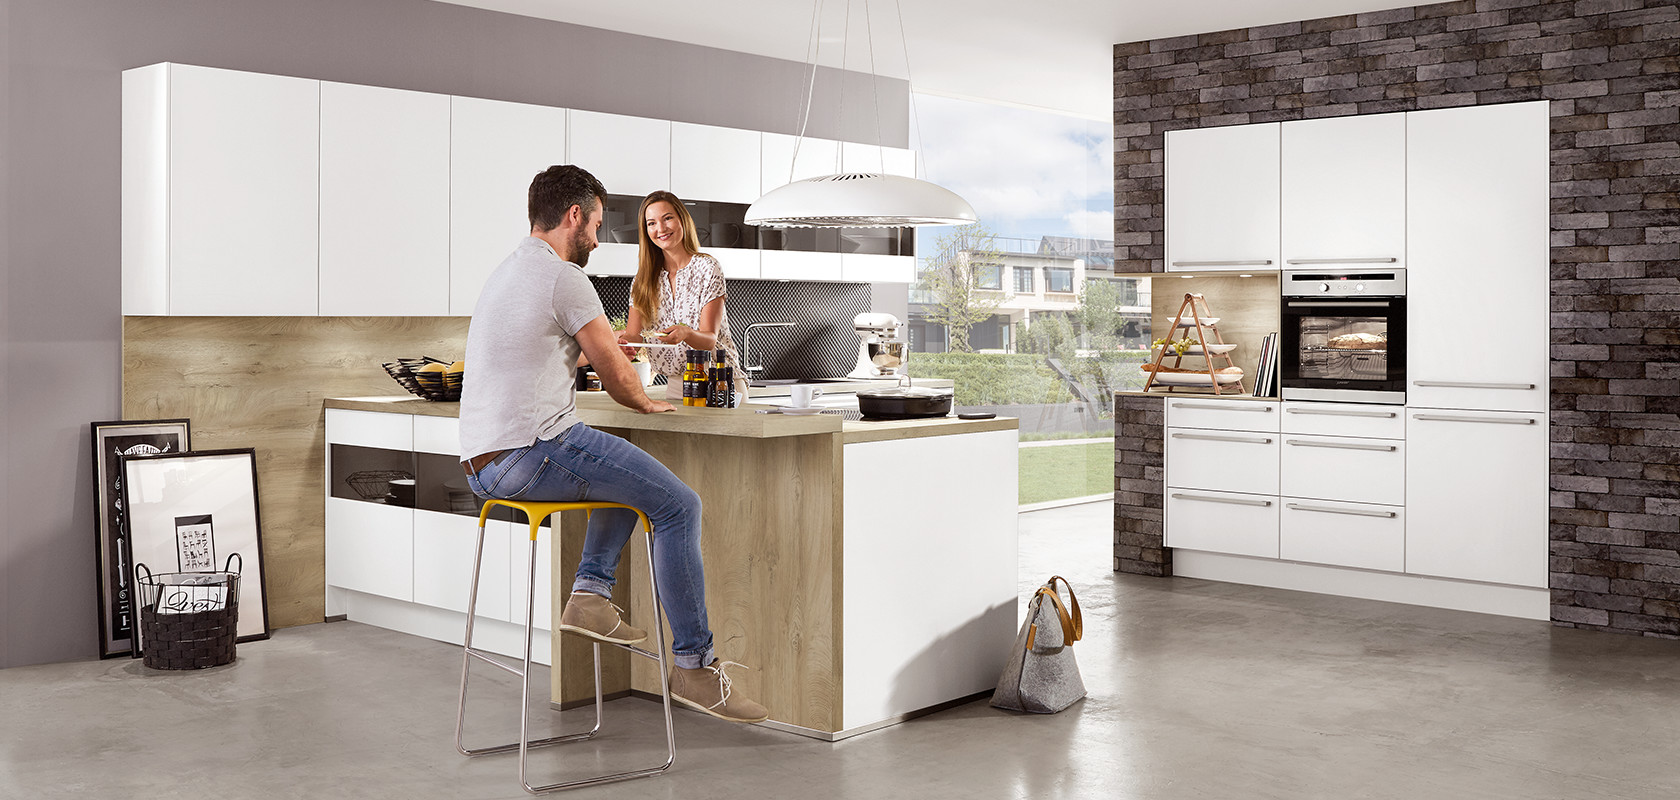 Un ambiente cucina moderno con una coppia sorridente che si intrattiene su un'isola per la preparazione dei pasti, con elettrodomestici eleganti e un'estetica di design minimalista.